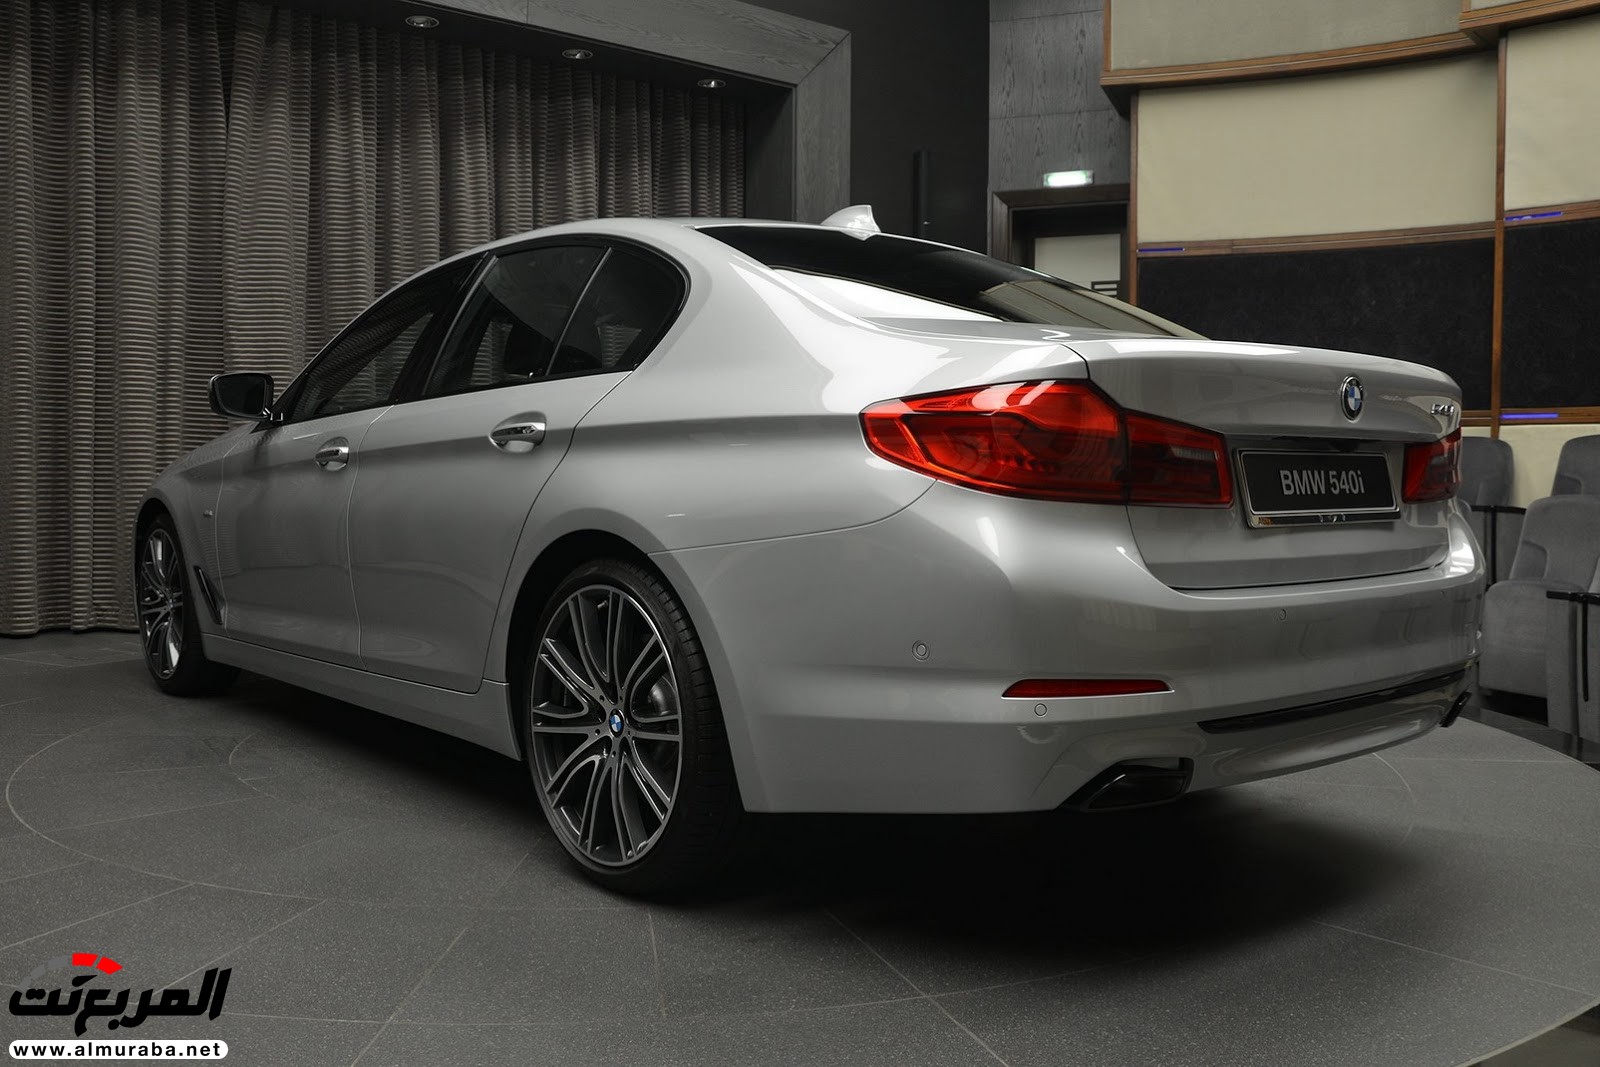 "بي إم دبليو" 540i الجديدة كلياً بتعديلات سبورت لاين معروضة بأبو ظبي BMW 4